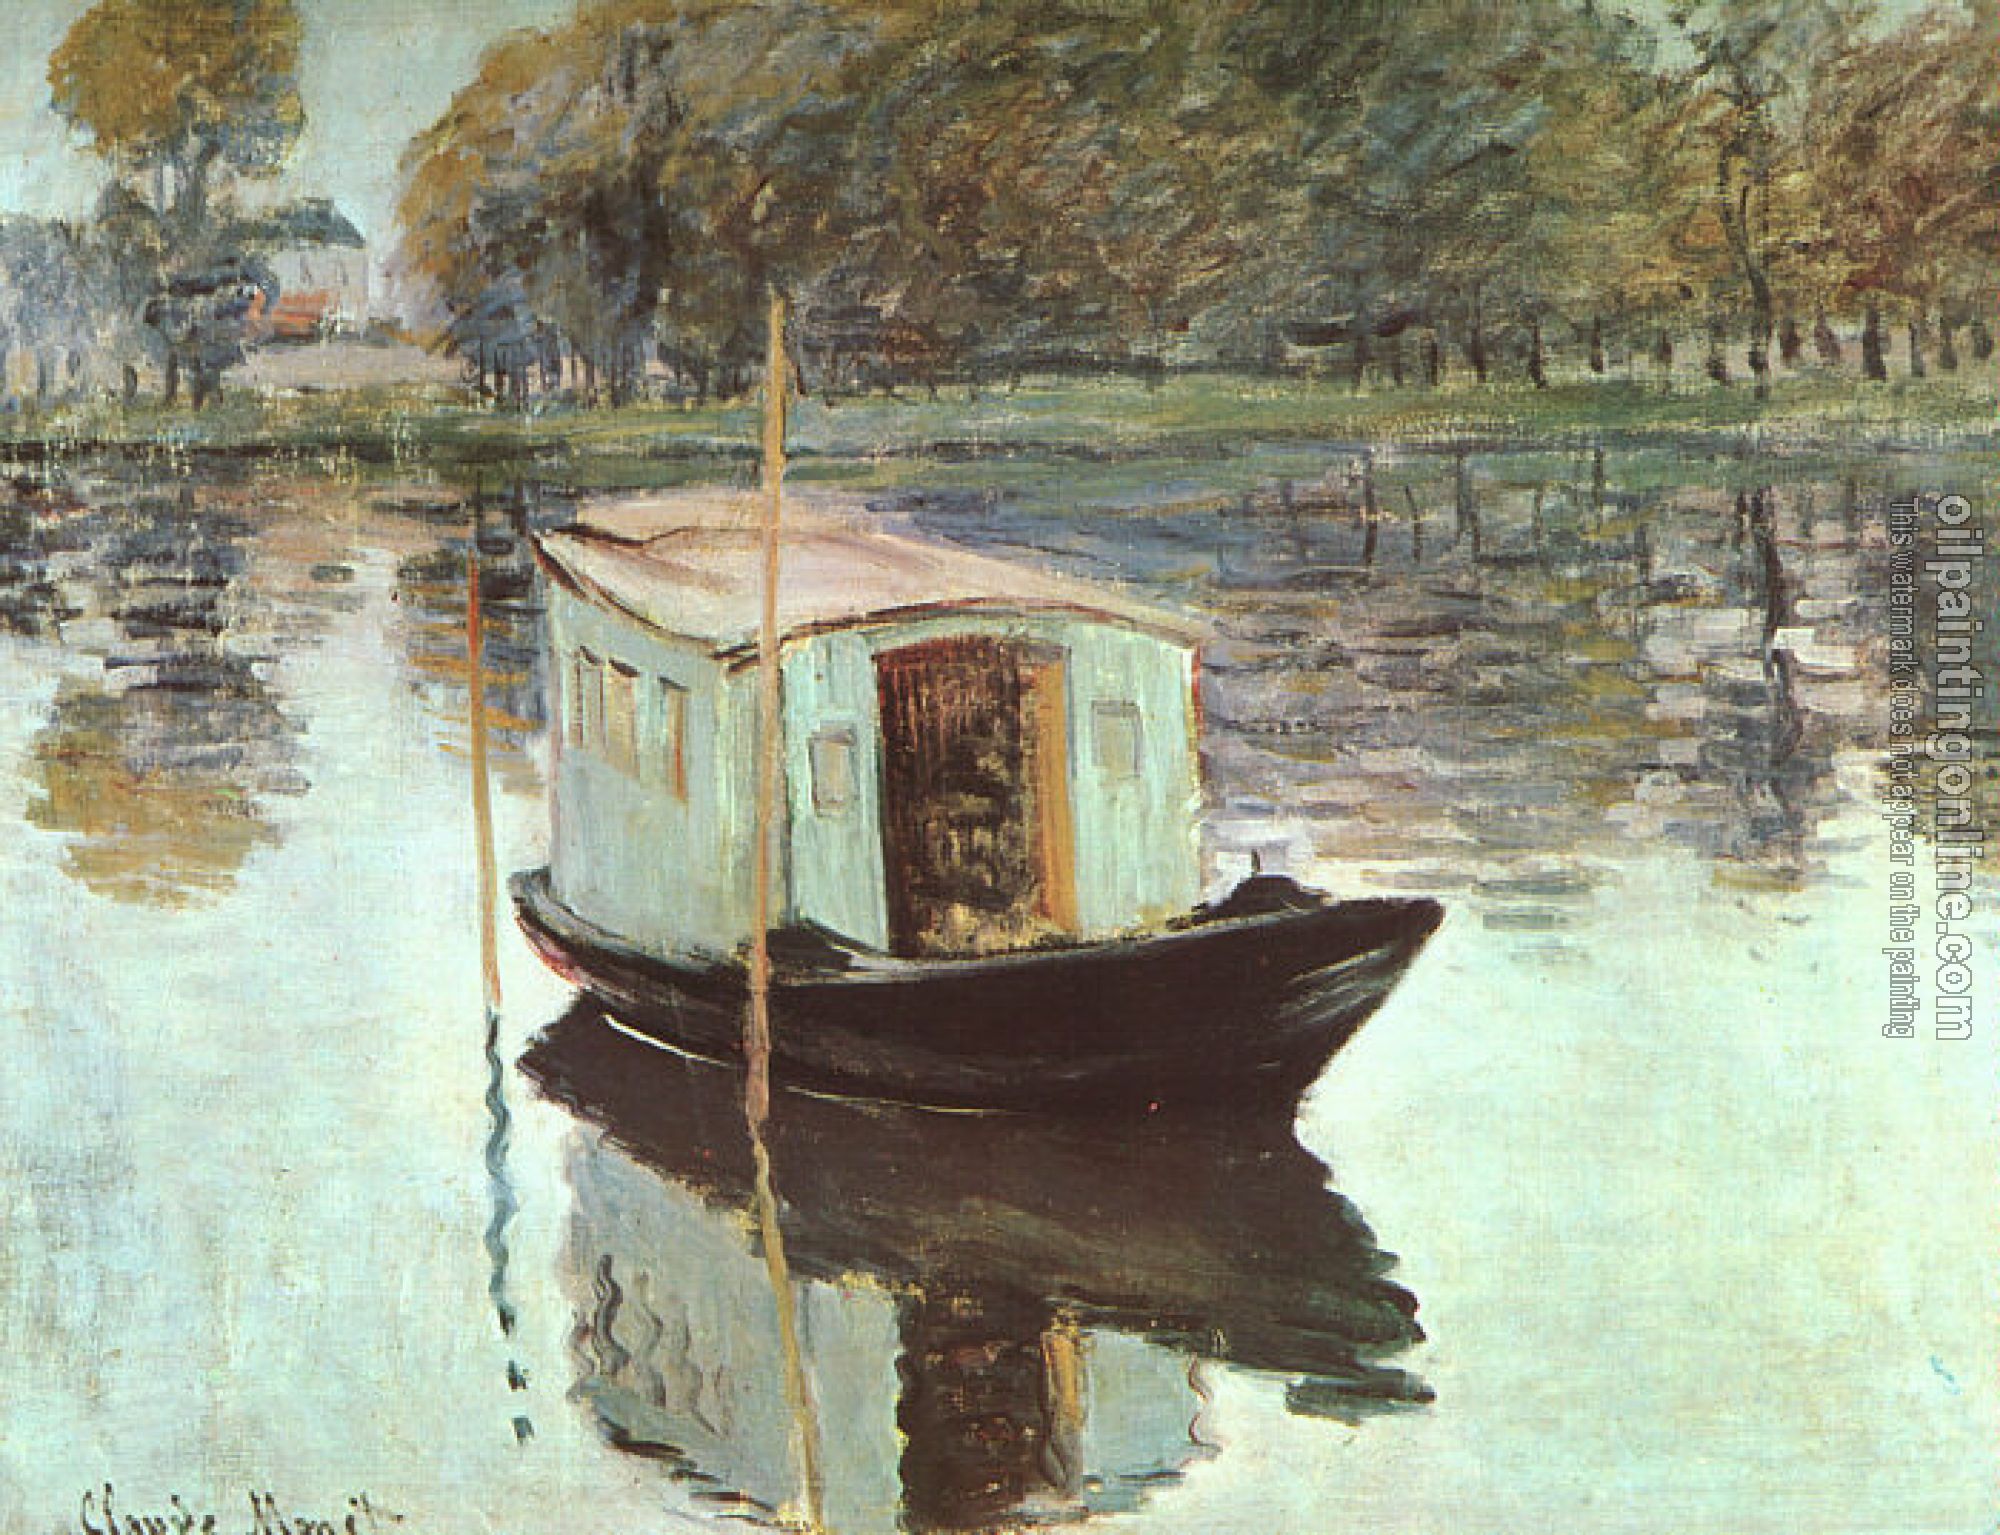 Monet, Claude Oscar - The Studio Boat